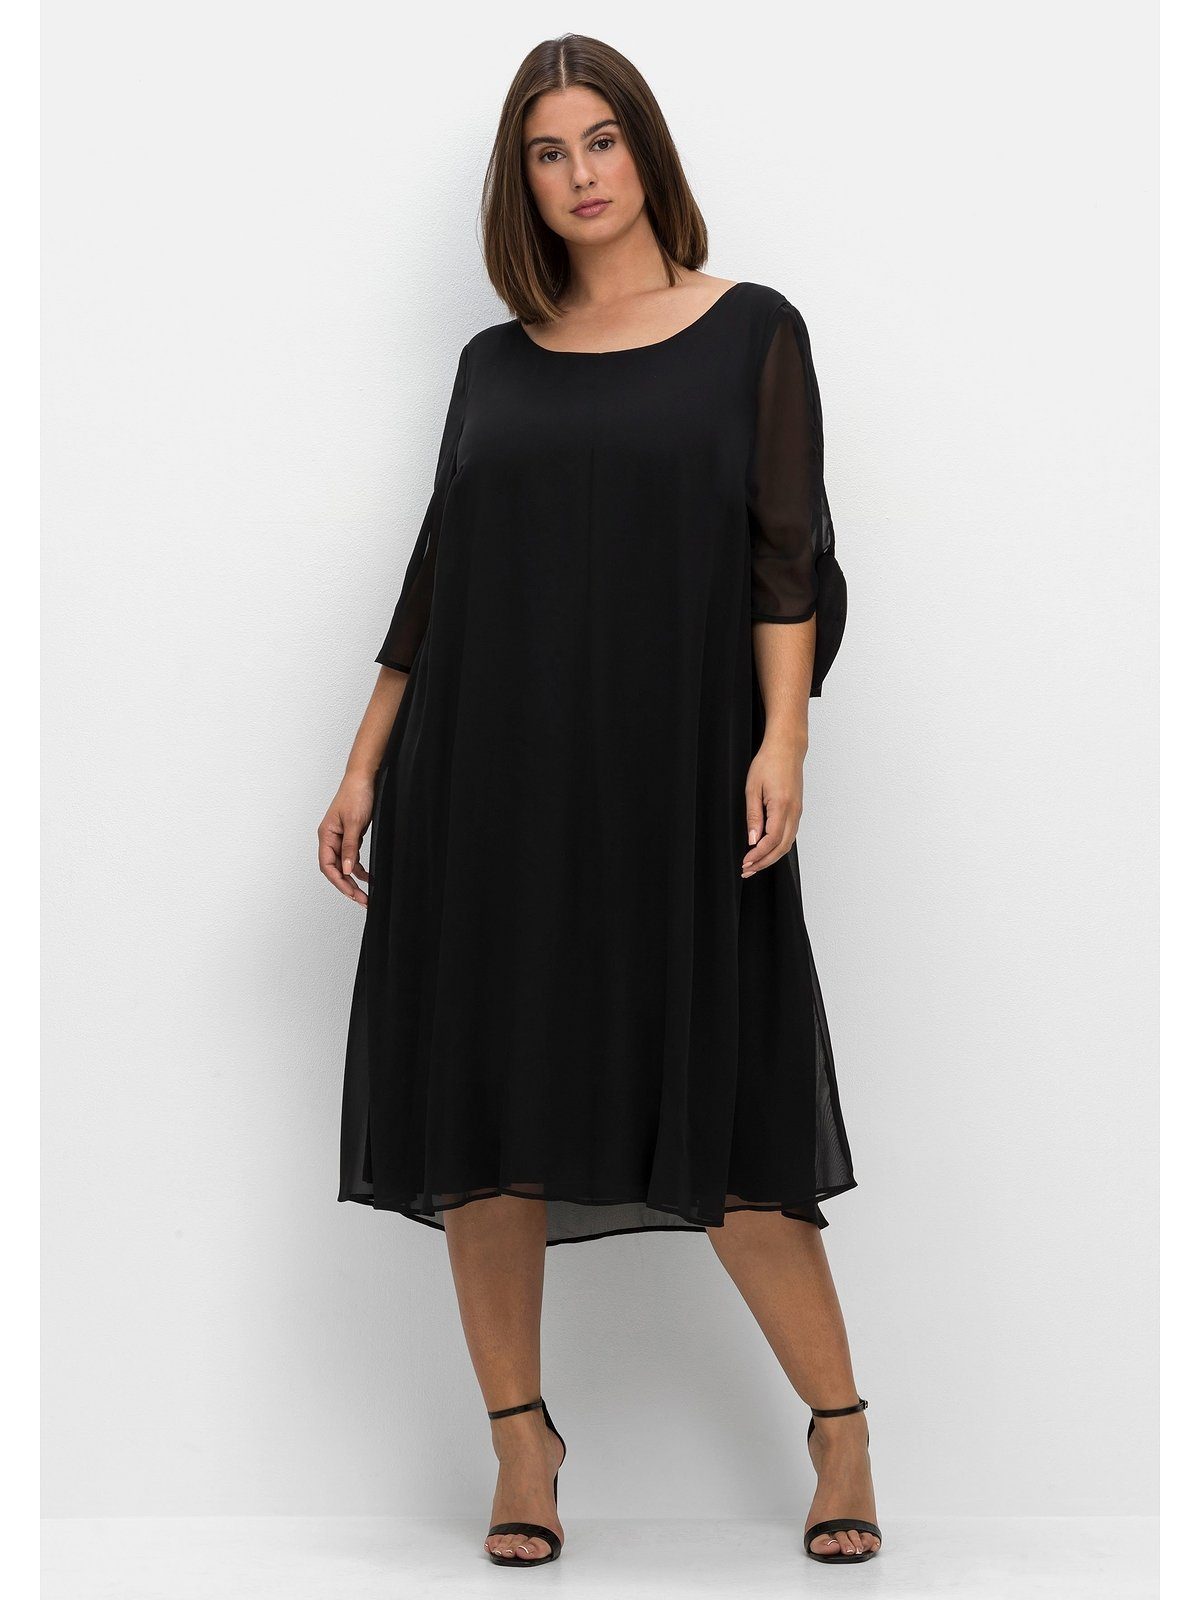 Kurze schwarze Partykleider für Damen online kaufen | OTTO